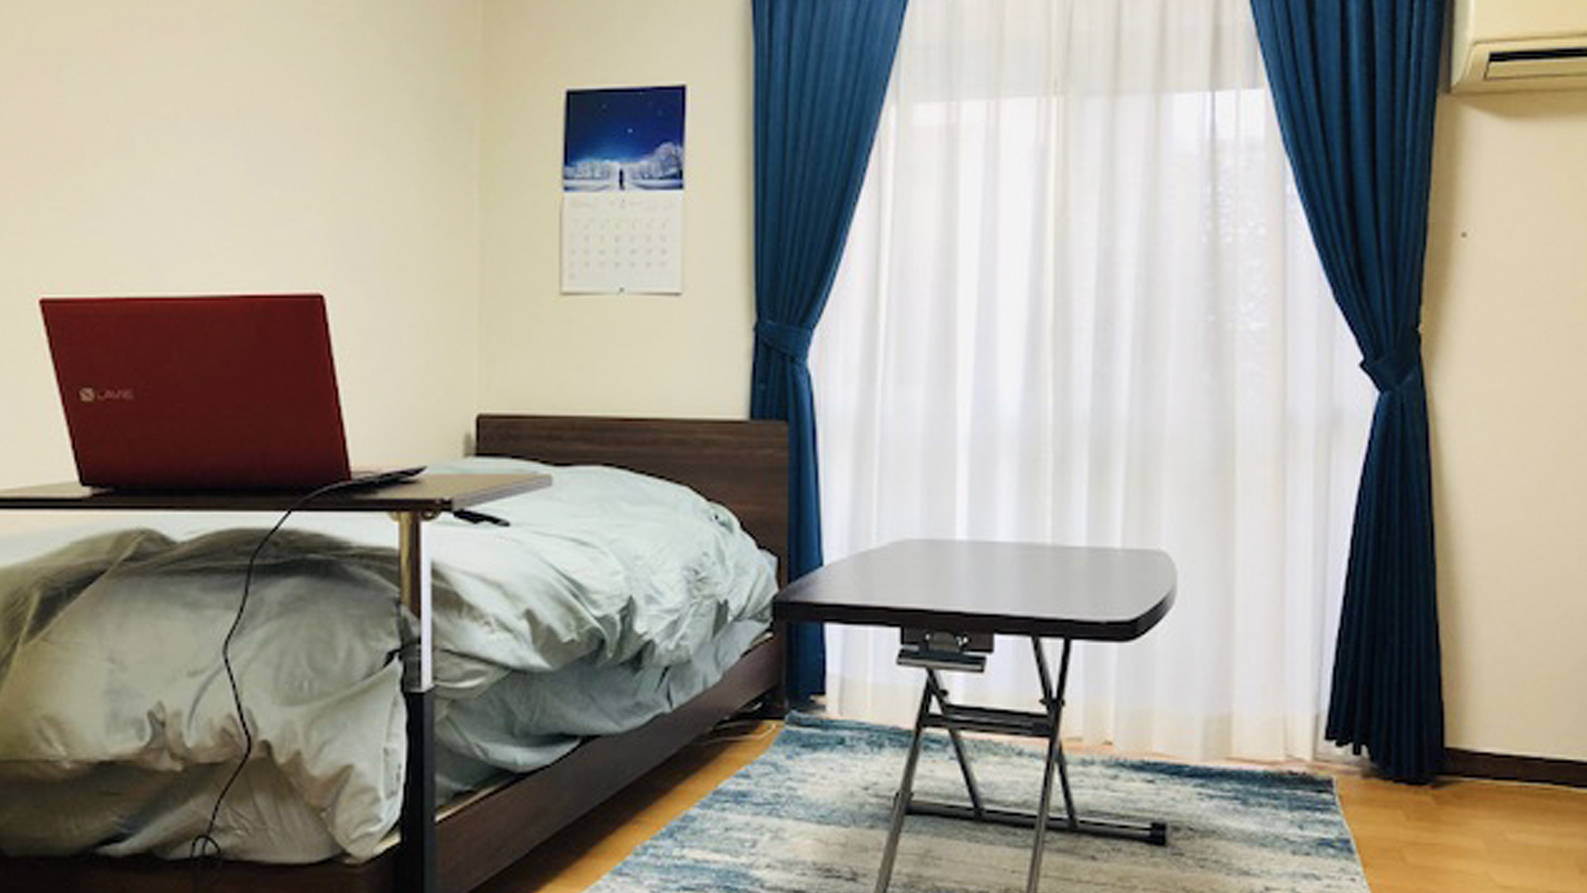 落ち着いたインテリアの男性一人暮らしの部屋た色の家具でコーディネート